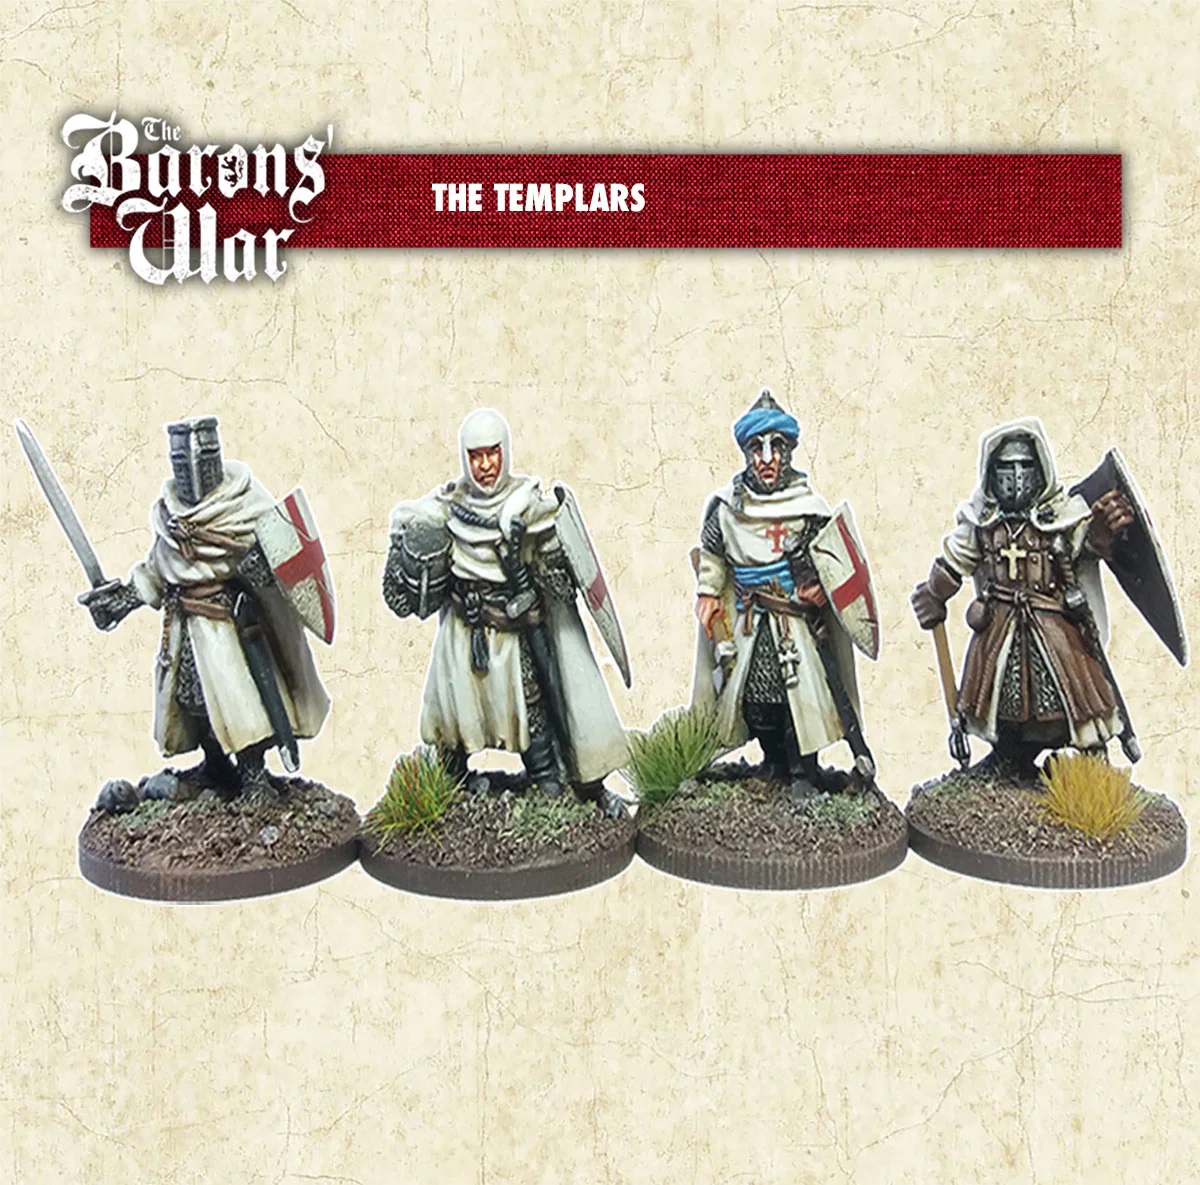 The Templars - The Barons War